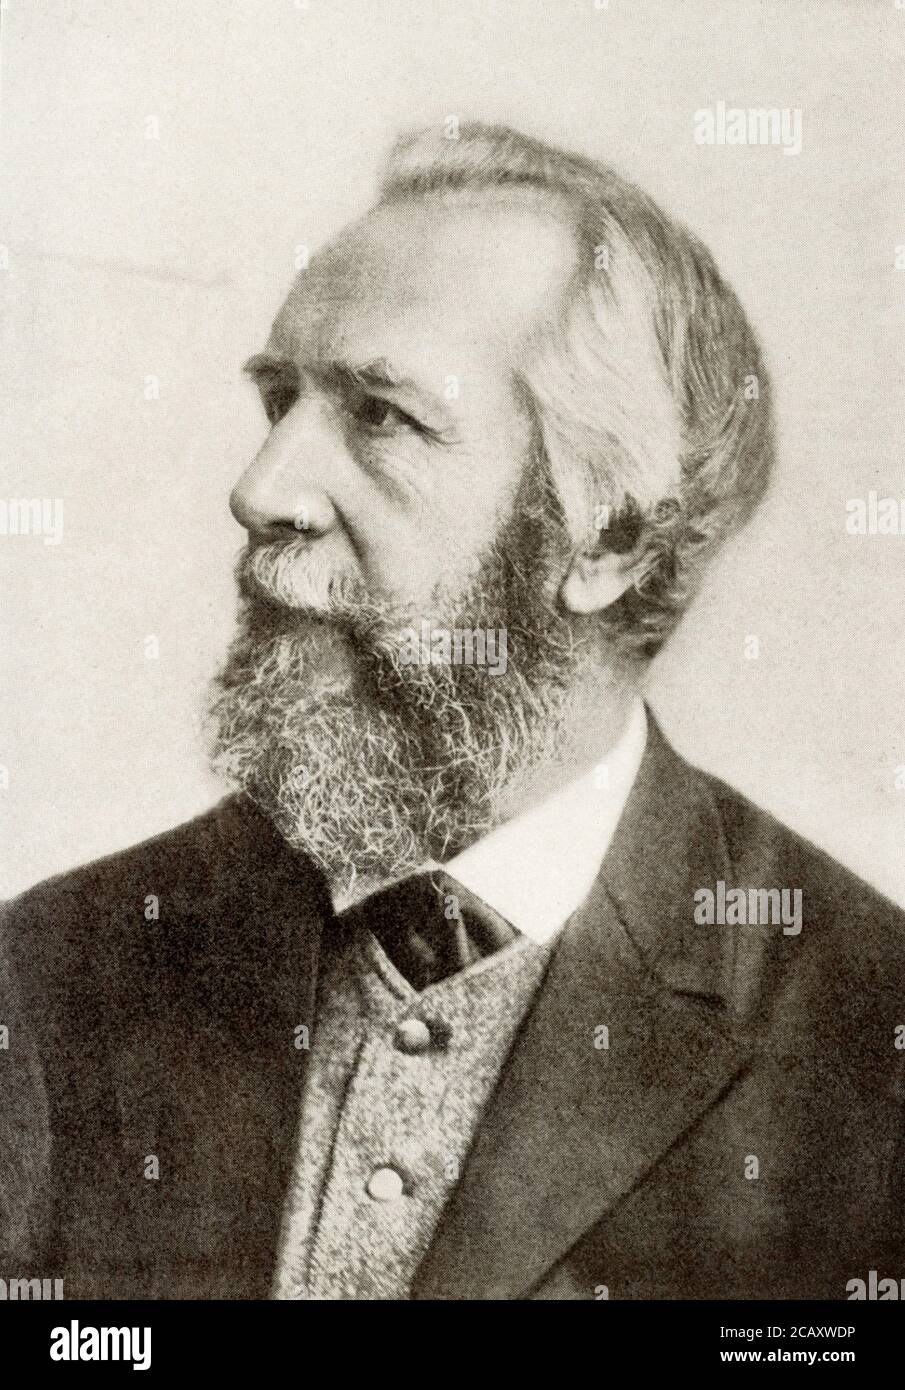 Ernst Haeckel (Ernst Heinrich Philipp August Haeckel) est né le 16 février 1834 à Potsdam, en Prusse [Allemagne]). Il est décédé le 9 août 1919 à Jena, en Allemagne. Zoologiste et évolutionniste allemand, il est un ardent défenseur du darwinisme et propose de nouvelles notions sur la descendance évolutive des êtres humains. Banque D'Images